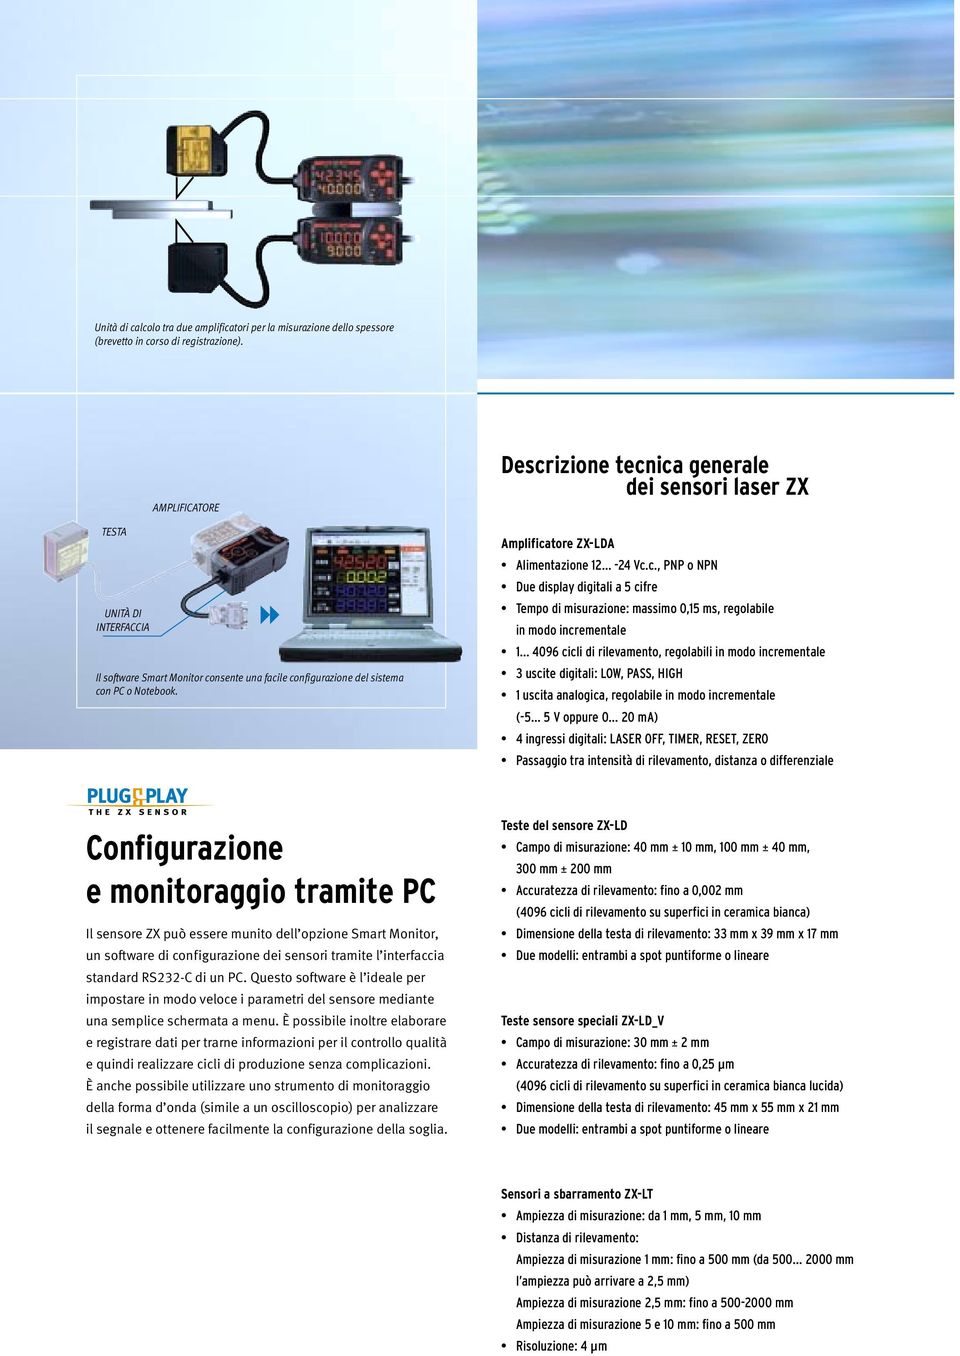 Descrizione tecnica generale dei sensori laser ZX Amplificatore ZX-LDA Alimentazione 12-24 Vc.c., PNP o NPN Due display digitali a 5 cifre Tempo di misurazione: massimo 0,15 ms, regolabile in modo